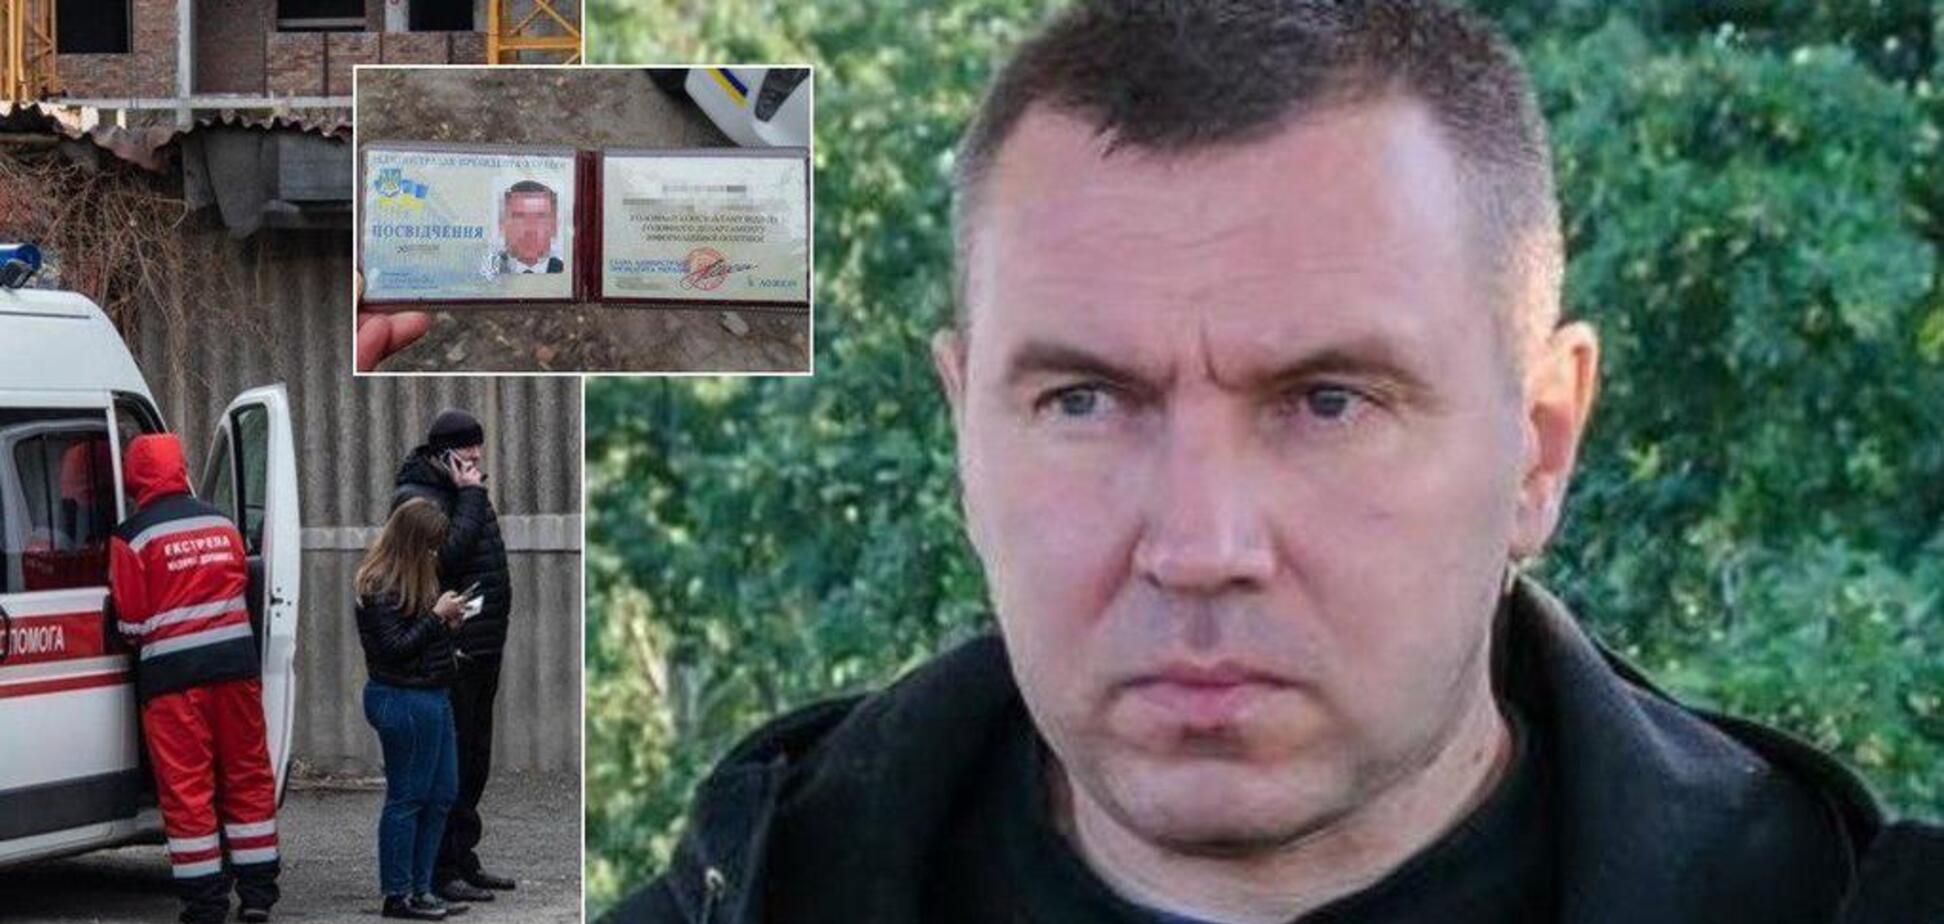 У Києві знайшли мертвим співробітника Адміністрації президента: всі подробиці